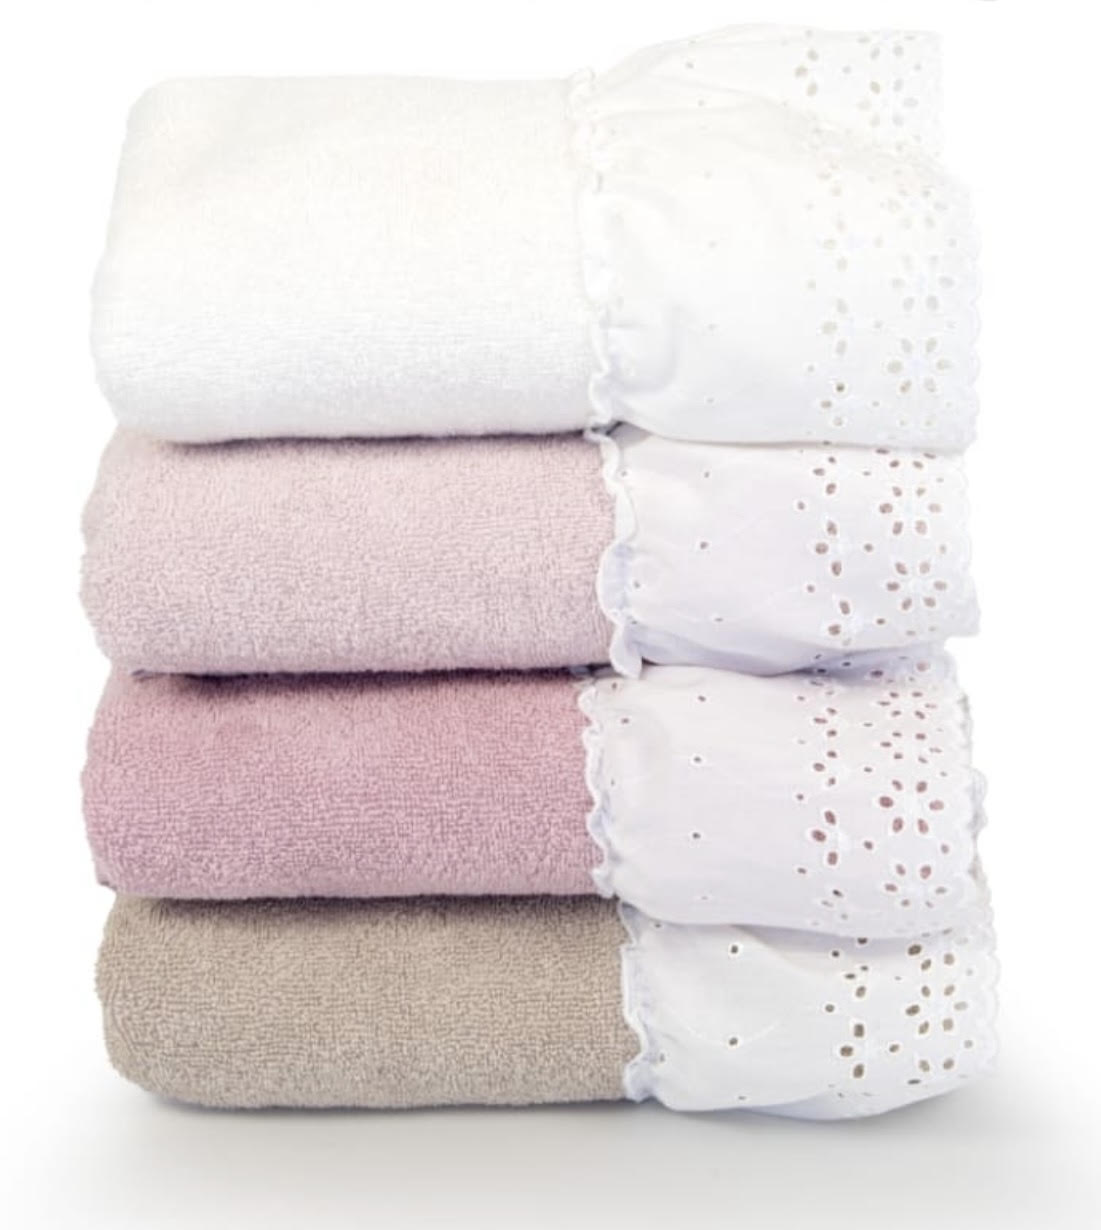 Coppia asciugamani jolie